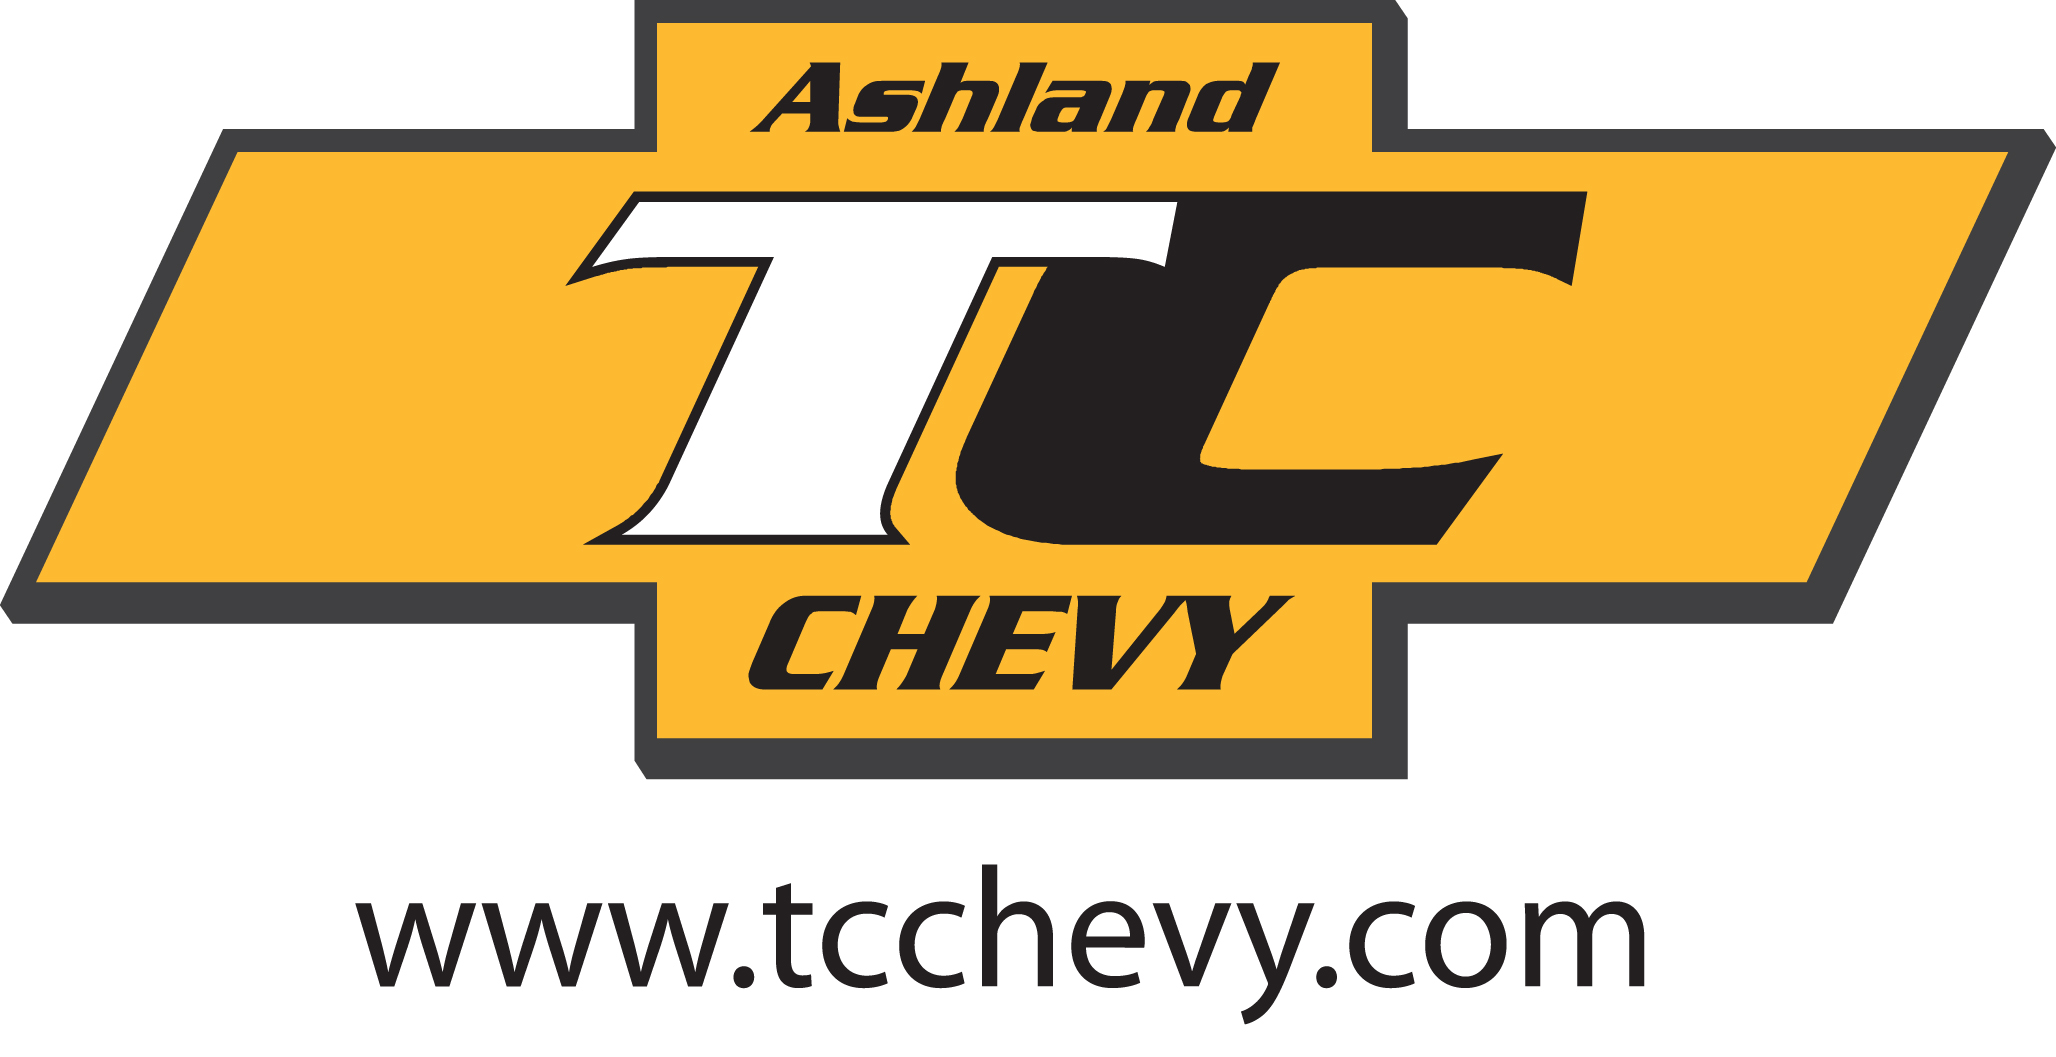 TC Chevy - Ashland 